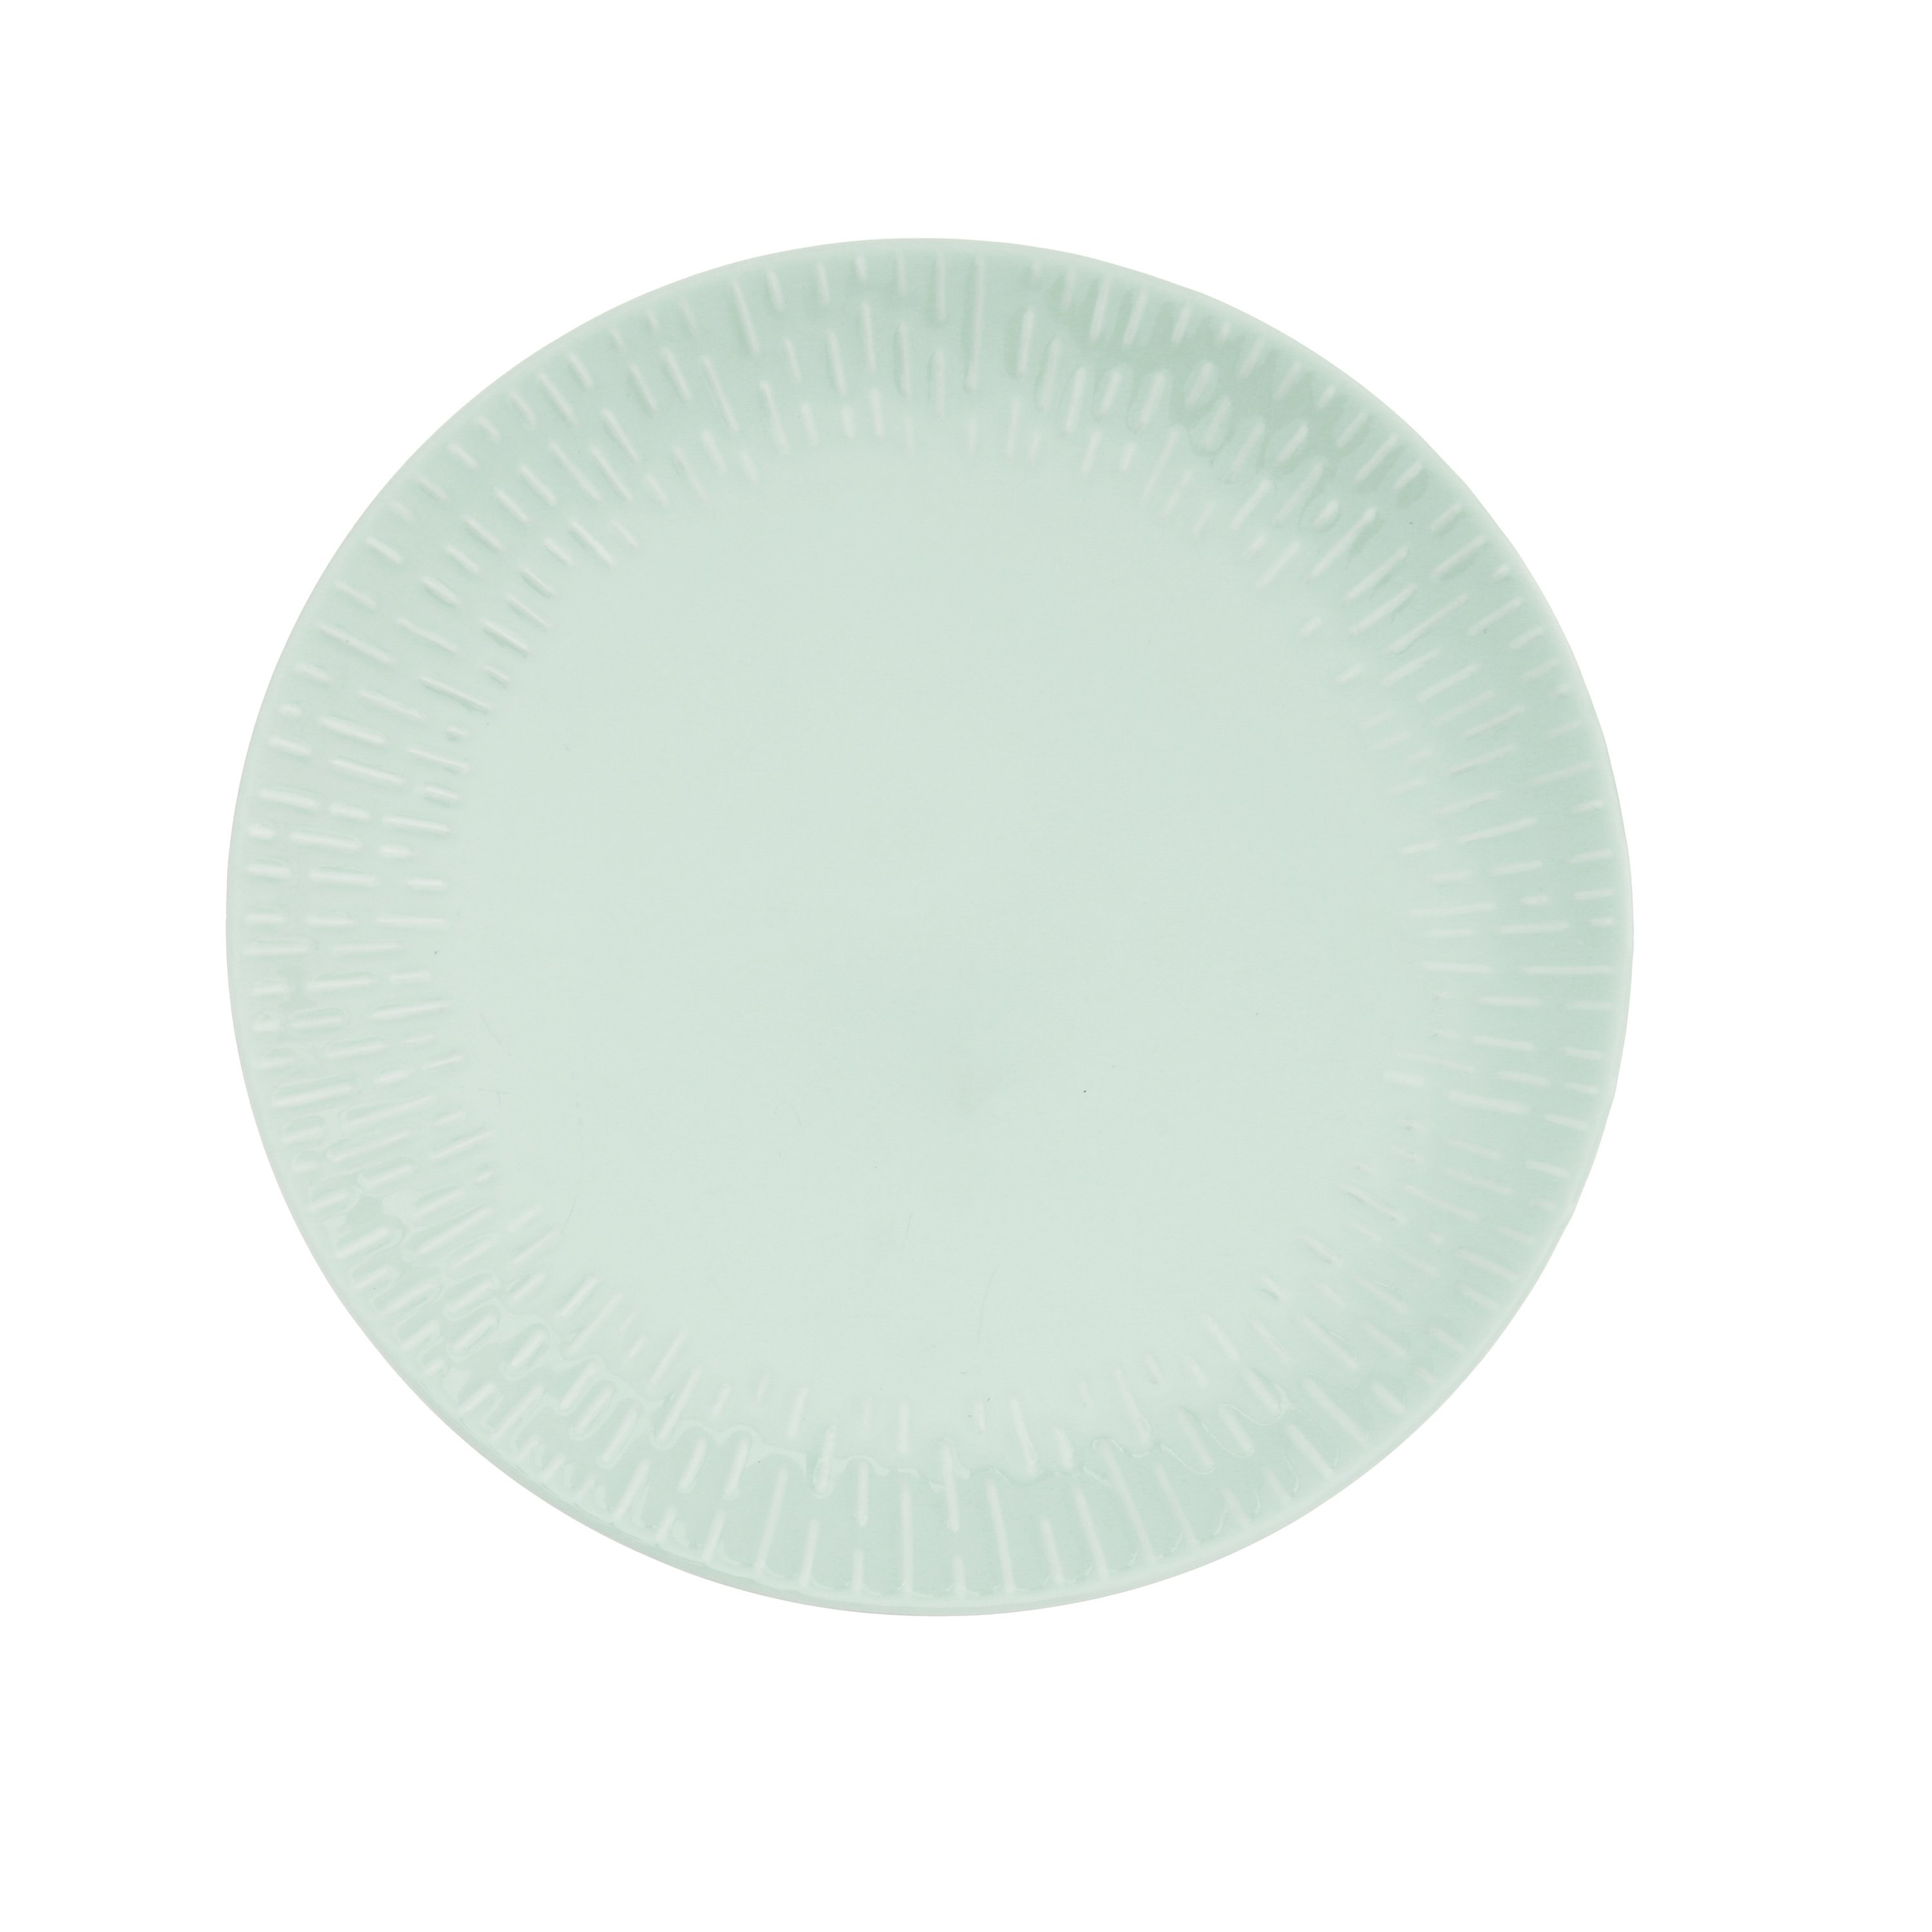 Aida - Life in Colour - Confetti - Pistachio dinner plate w/relief porcelain (13483) - Hjemme og kjøkken